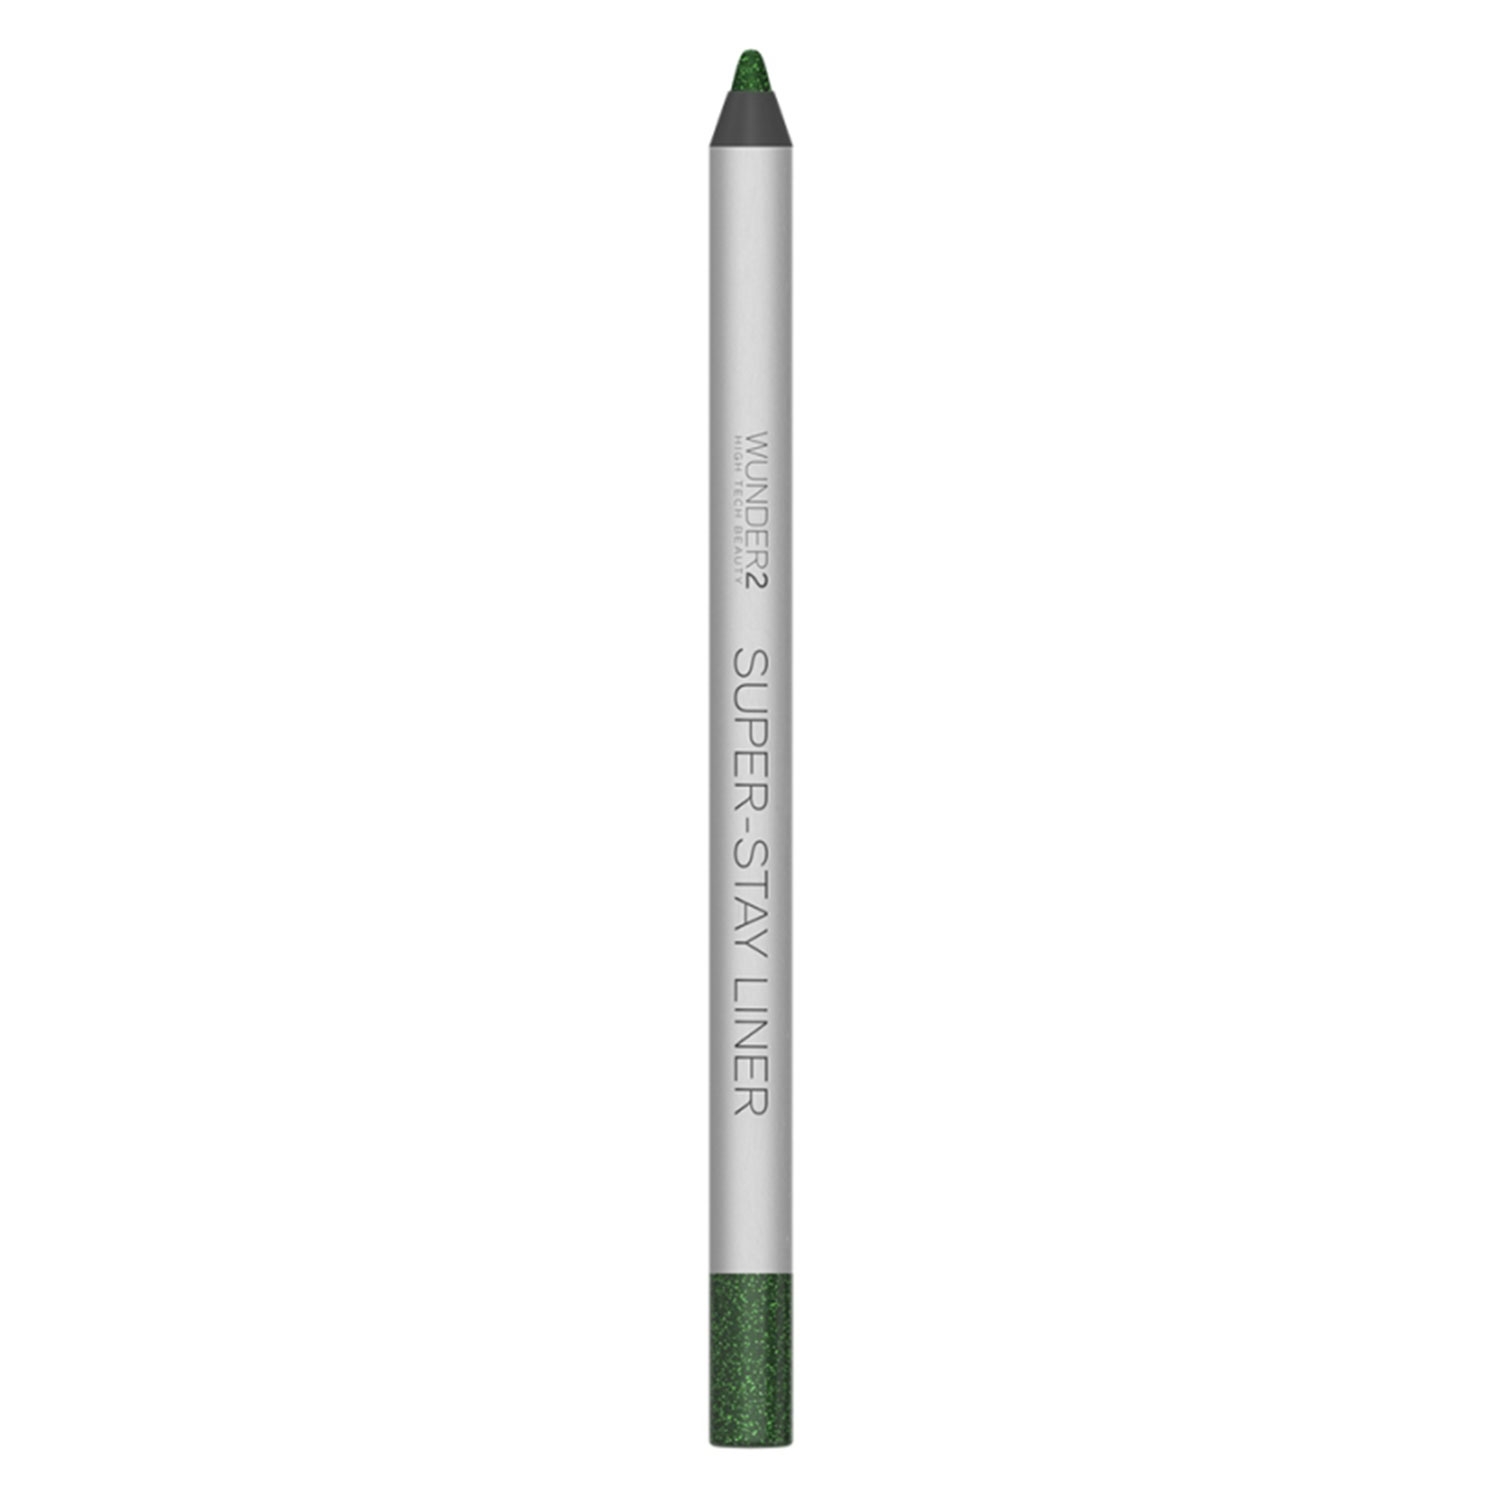 Produktbild von SUPER-STAY - Eye Pencil Glitter Emerald